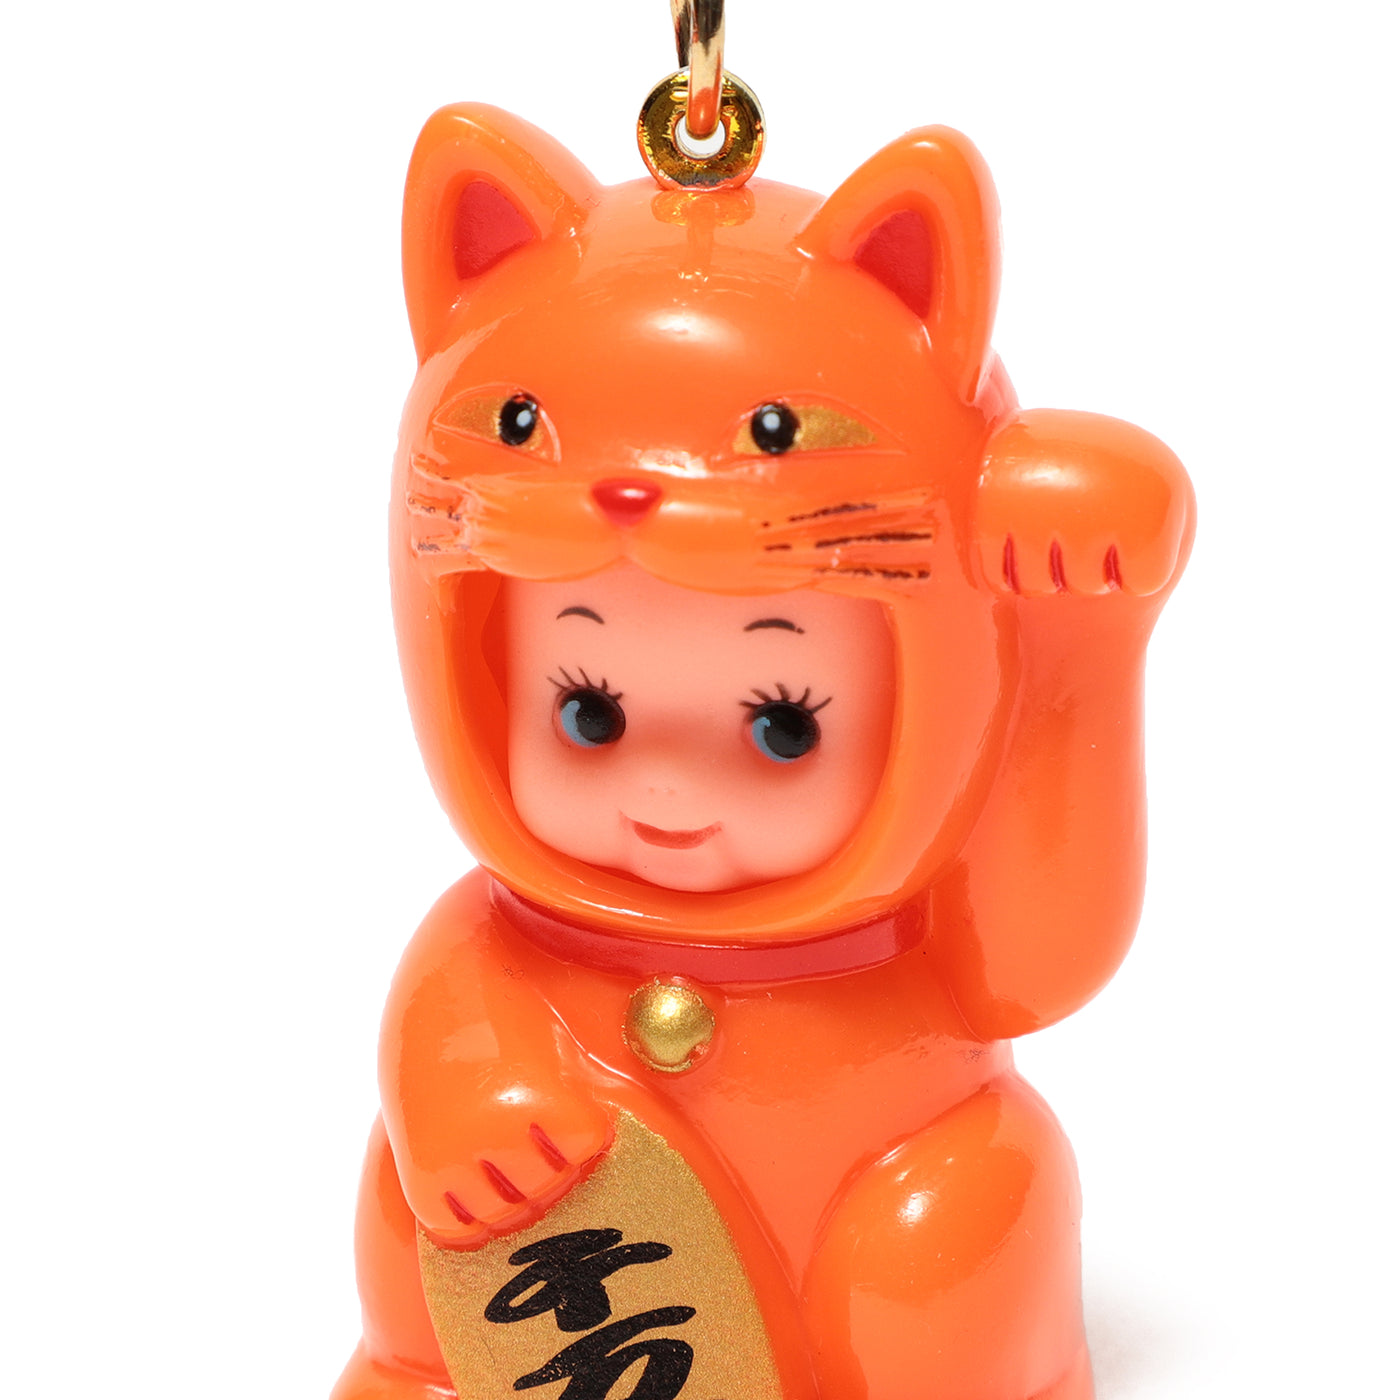 Orange Kewpie Doll Key Chain (Lucky Cat)